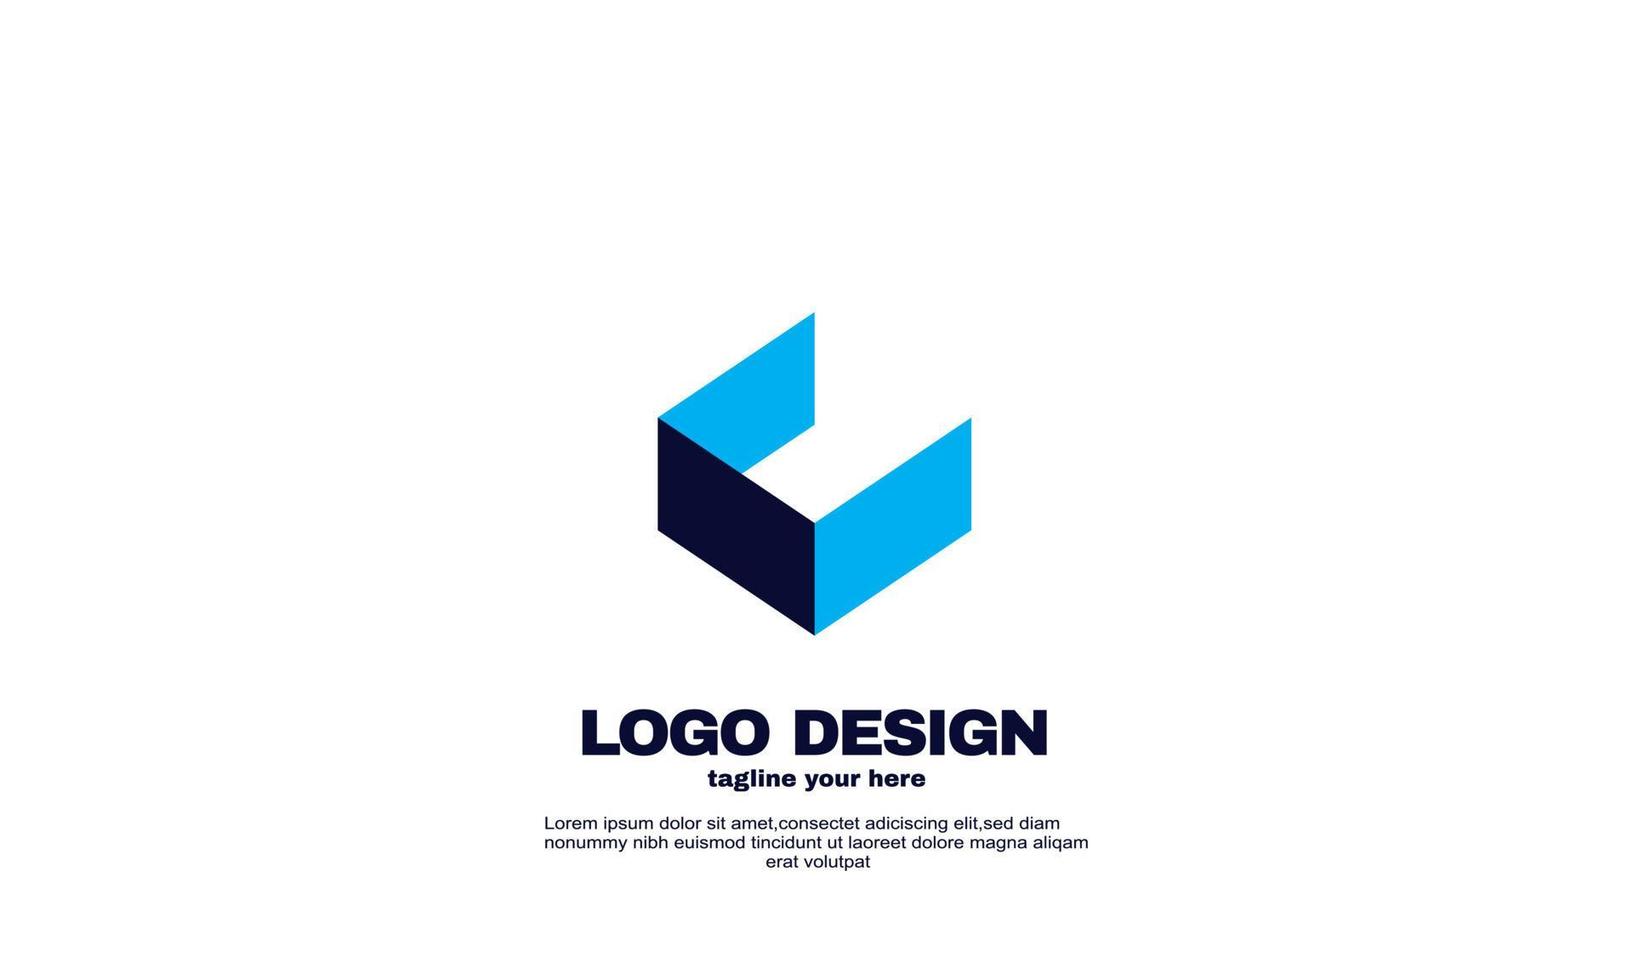 Stock vettore astratto idea creativa migliore elegante azienda logo design blu navy colore